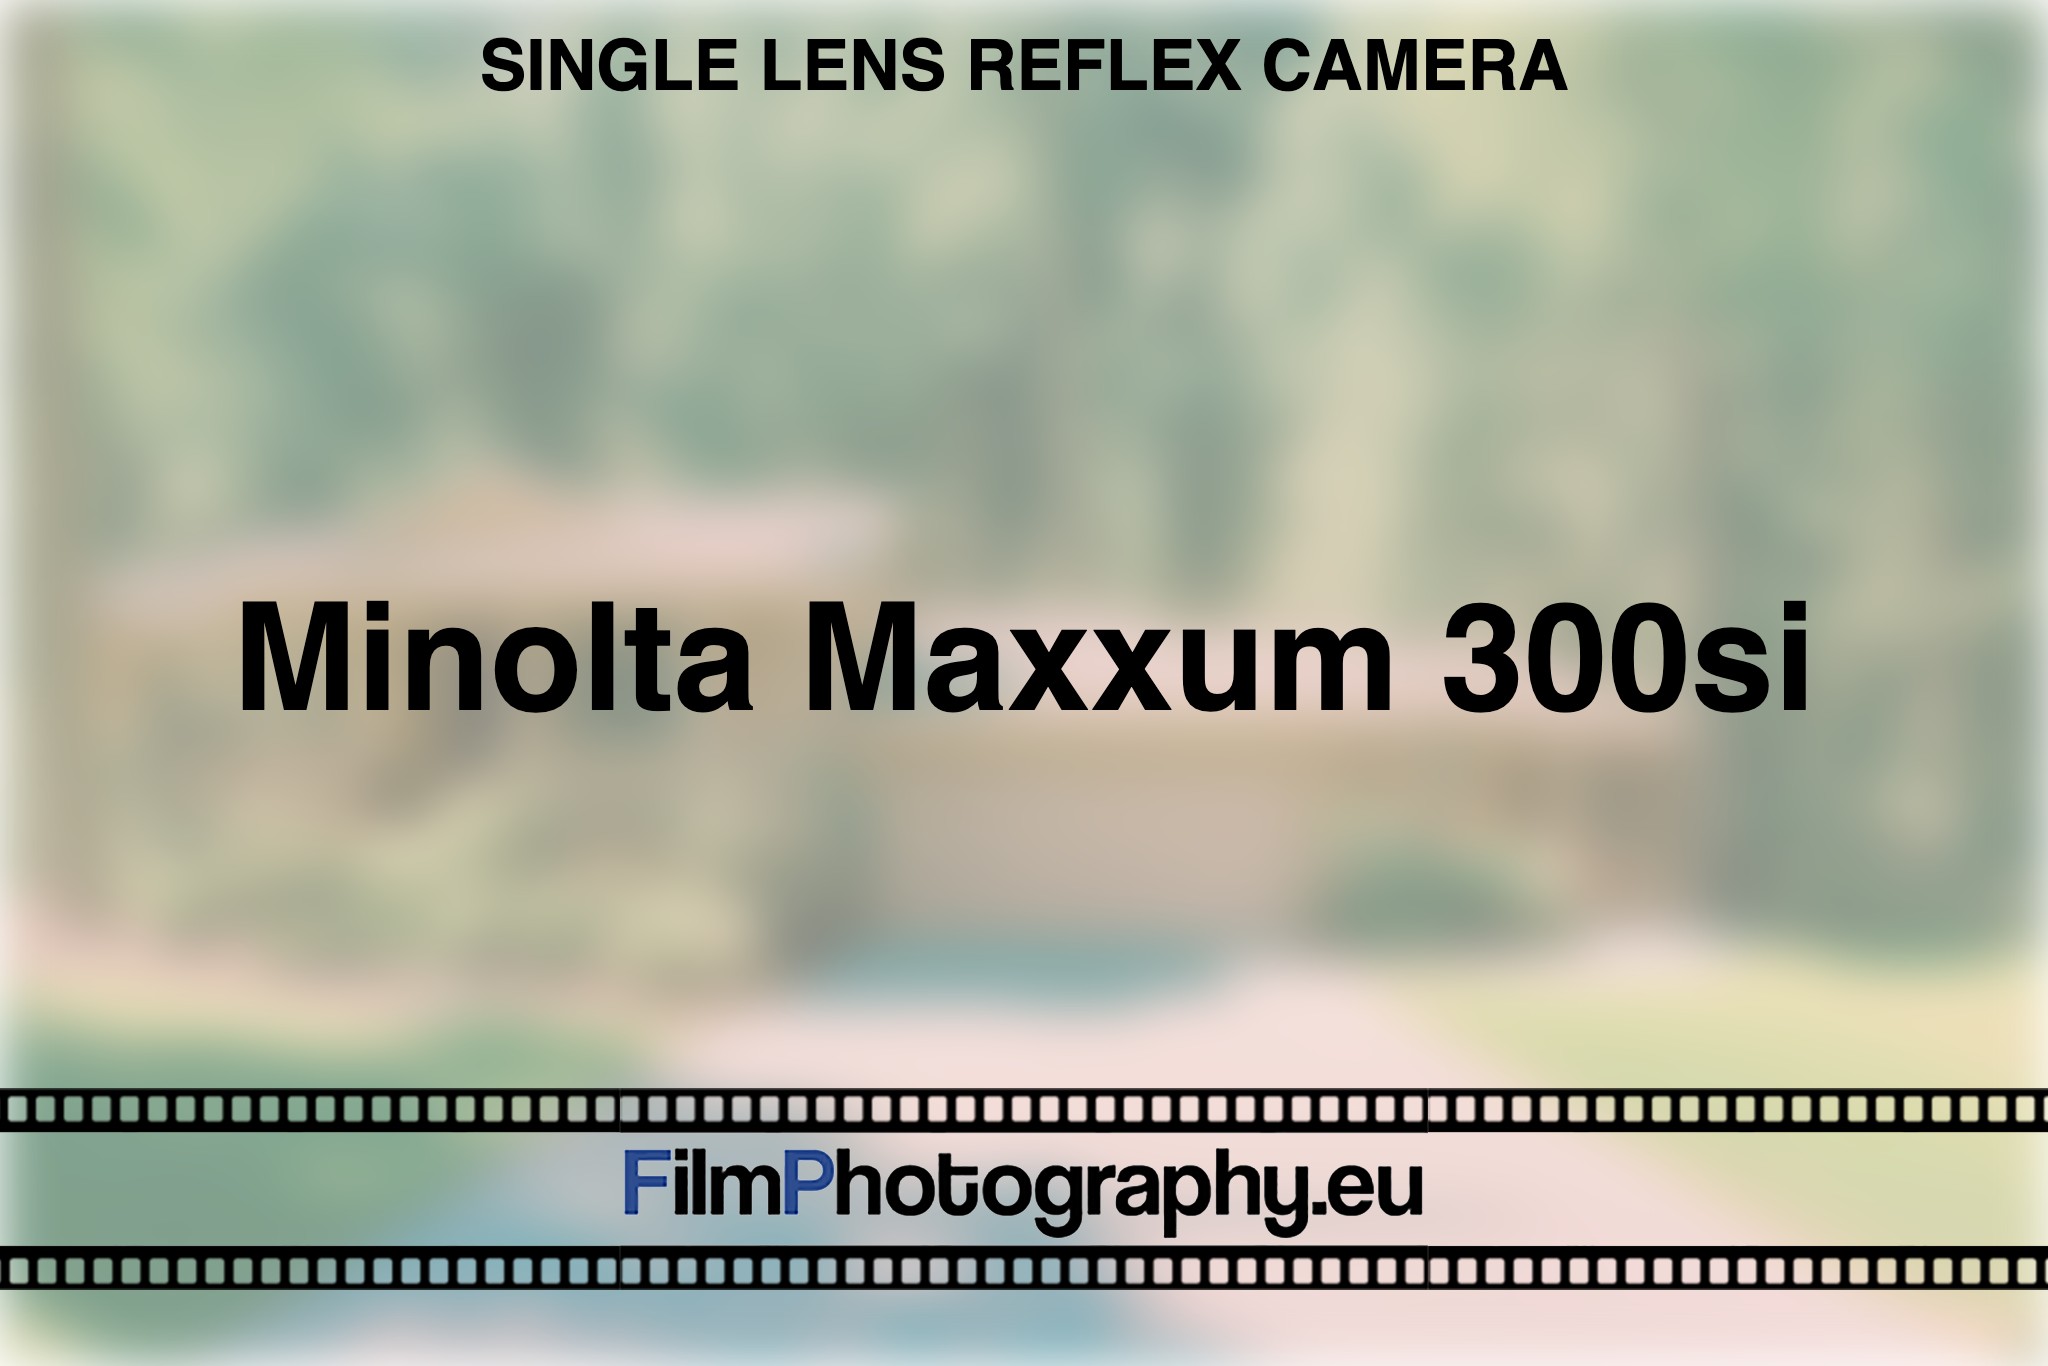 minolta-maxxum-300si-single-lens-reflex-camera-bnv